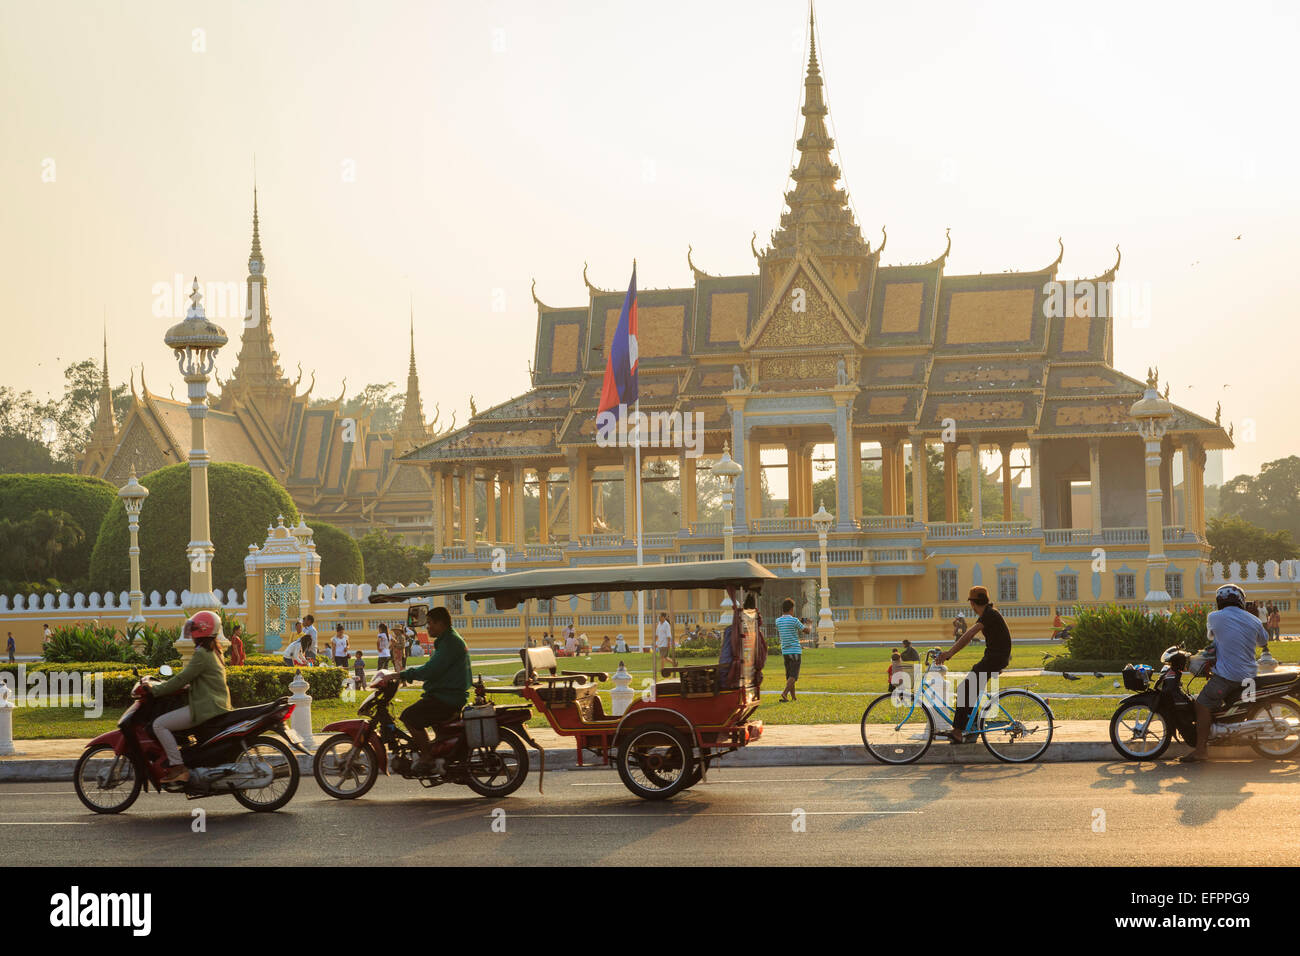 The Royal Palace, Phnom Penh, Cambodia. Stock Photo